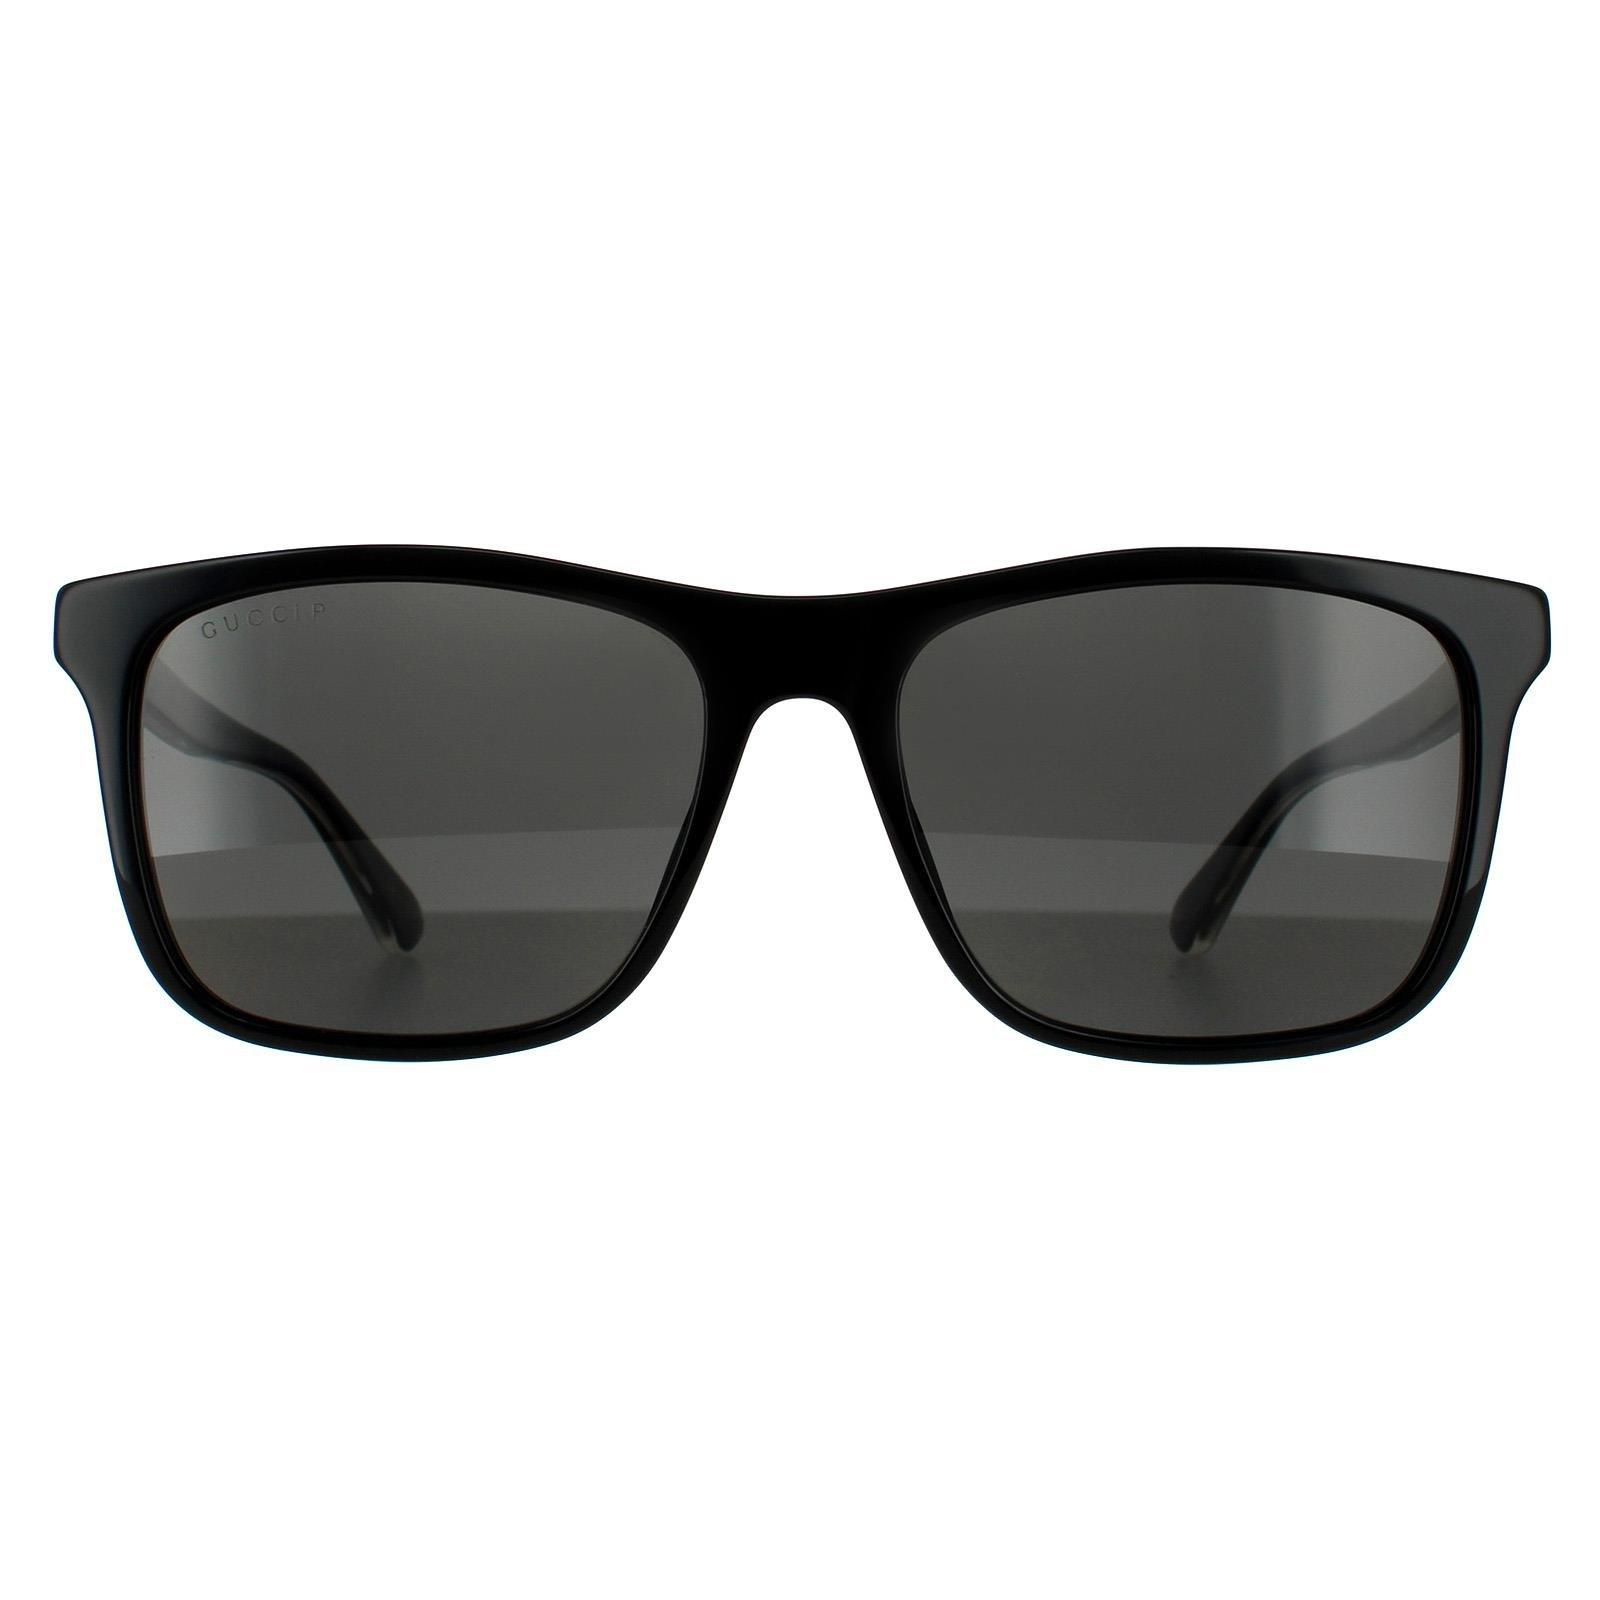 Sunglasses | Rectangle Black Grey Polarized Sunglasses | Gucci